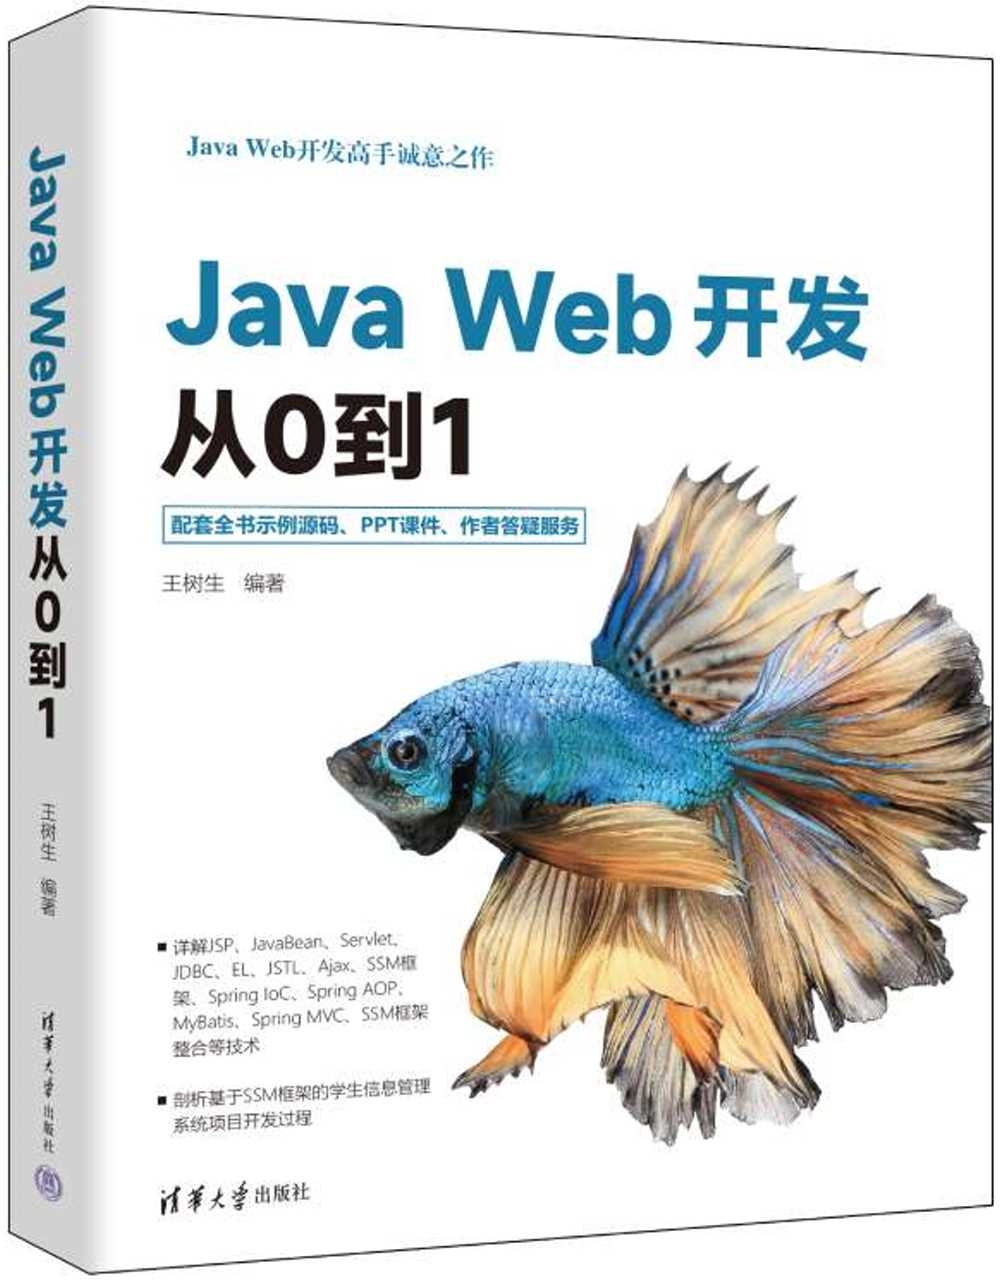 Java Web開發從0到1